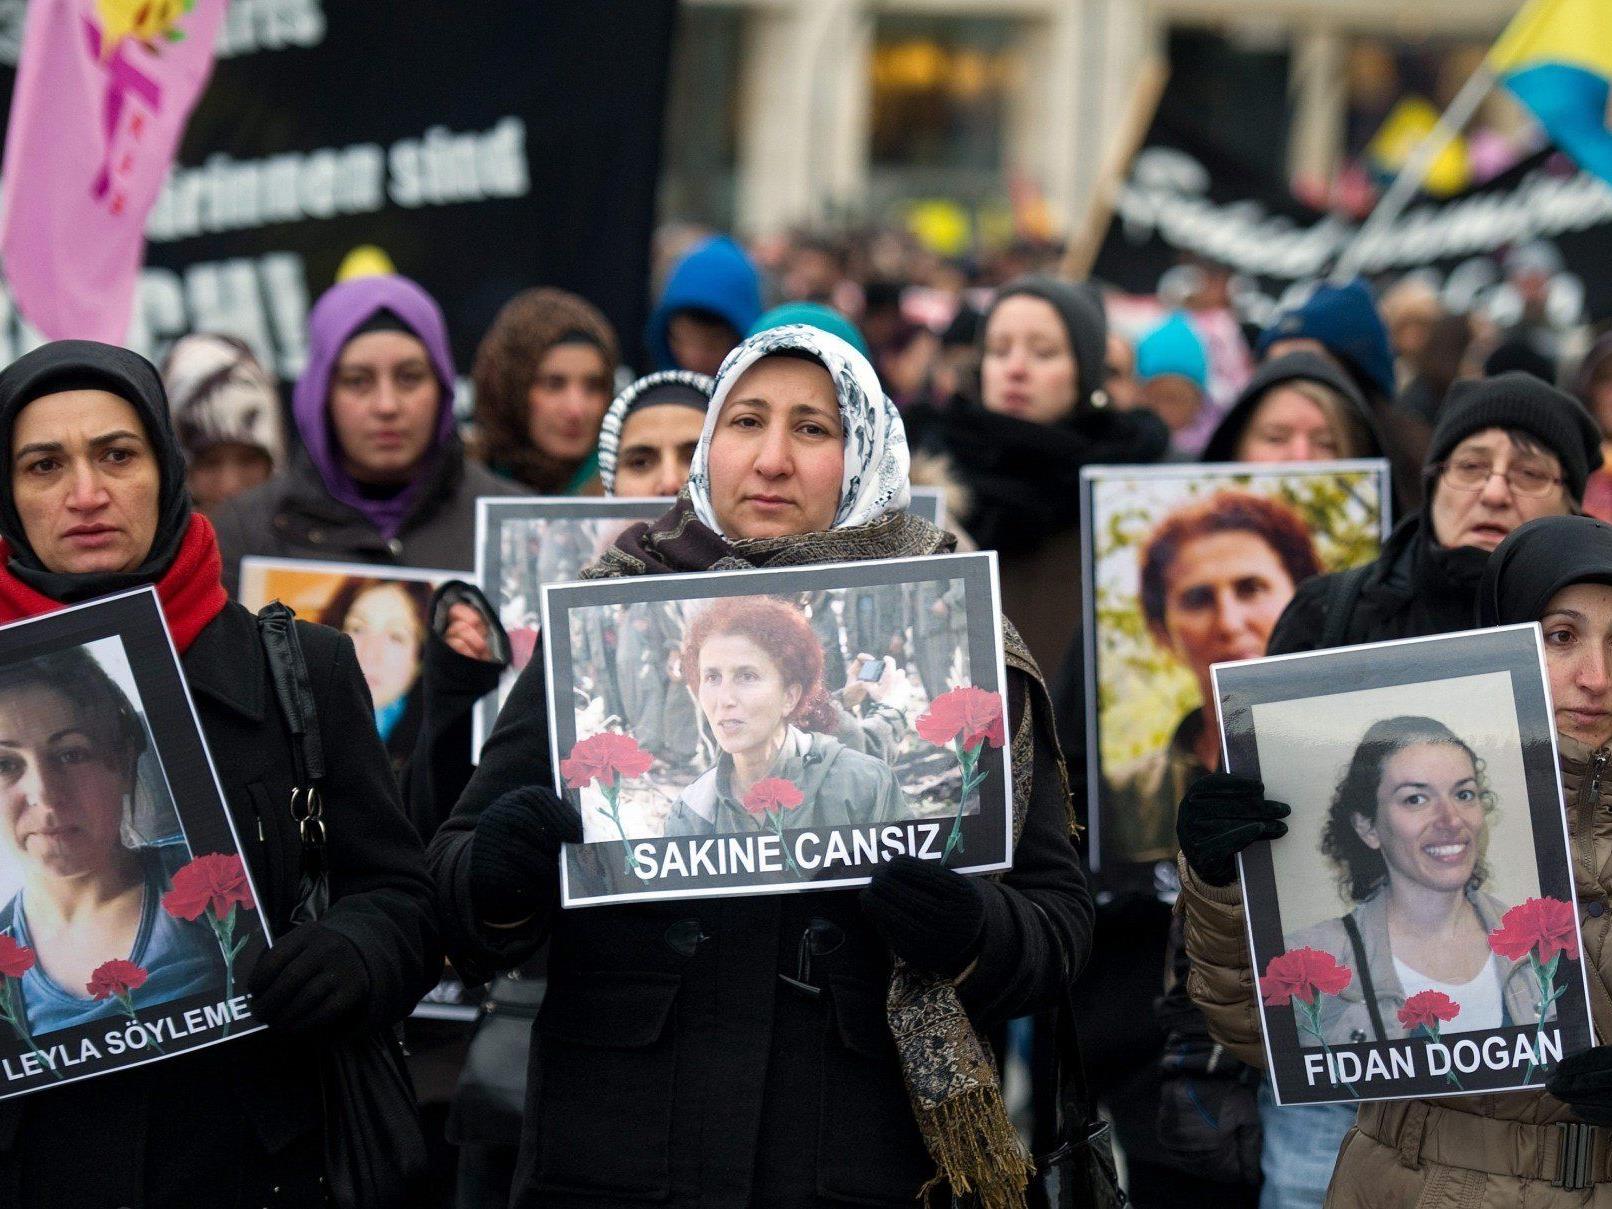 Auch in Hamburg gab es bereits Demonstrationen gegen die Ermordung der Aktivistinnen in Paris.